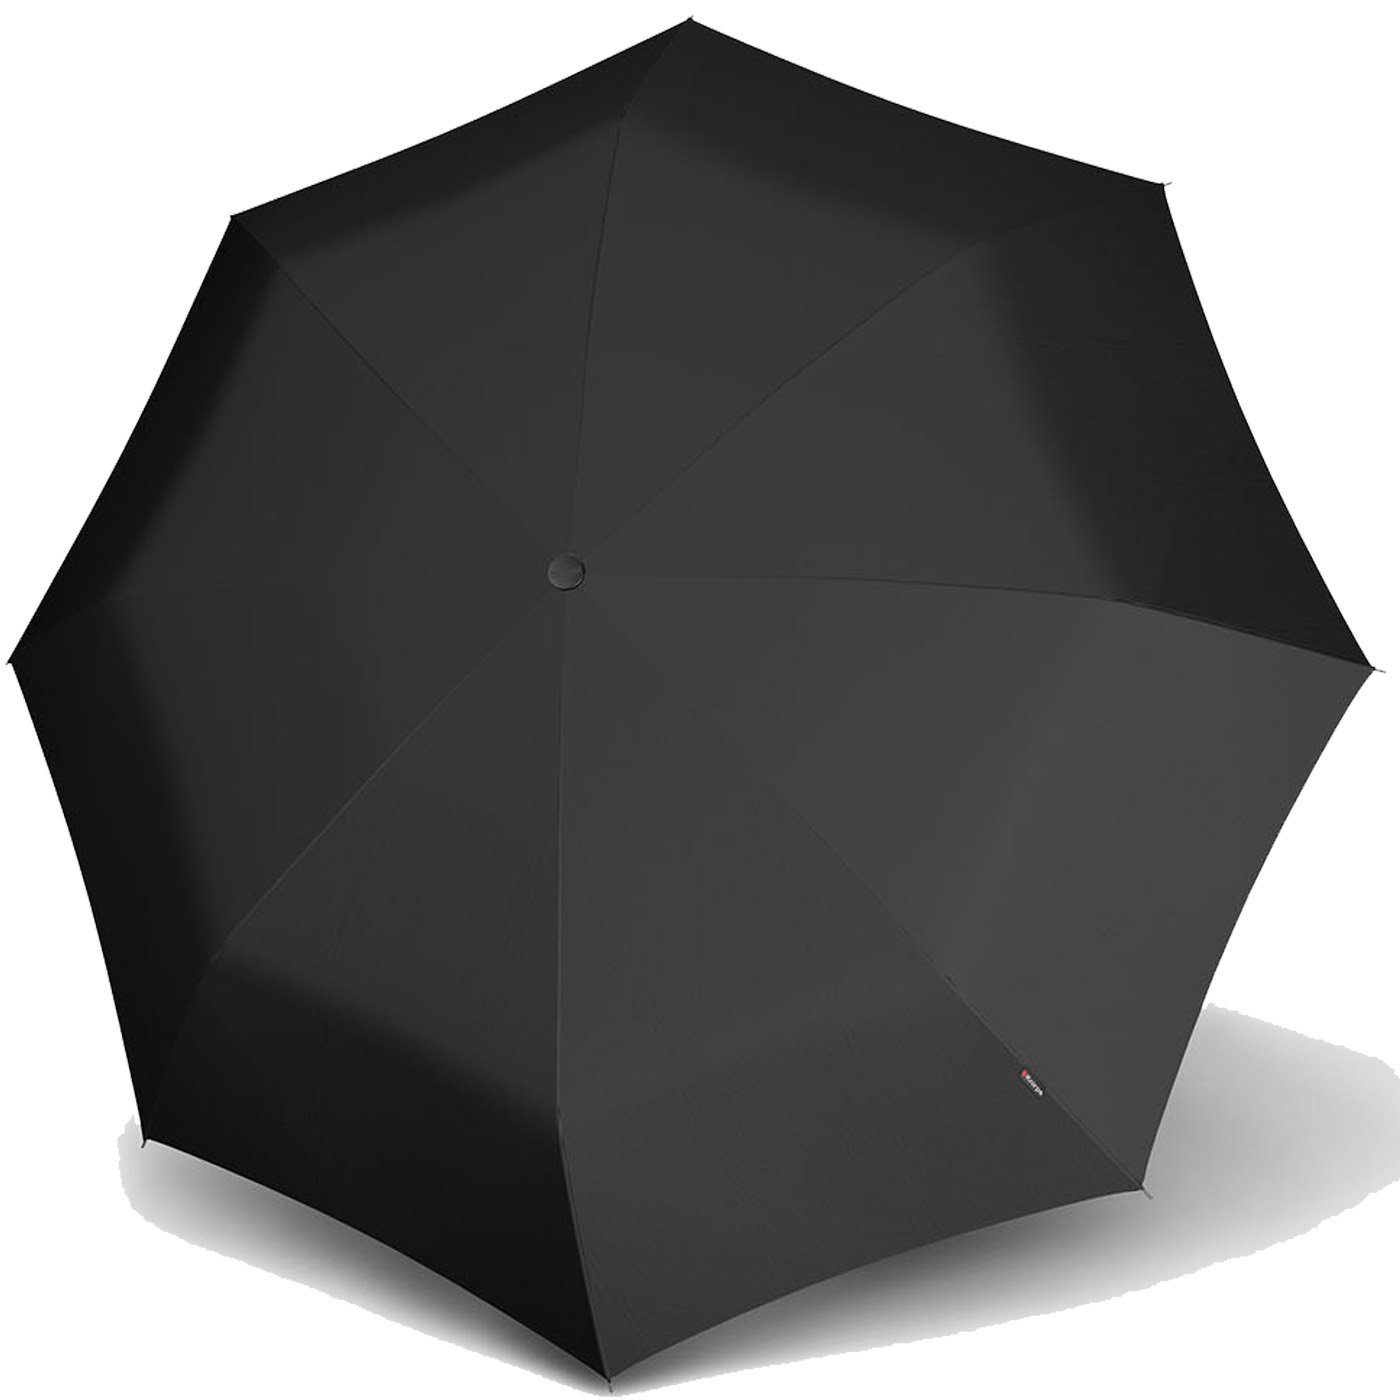 Reverse Automatik, der robust alte Classiker - Umbrella Knirps® MinimaticSL besondes - Taschenregenschirm